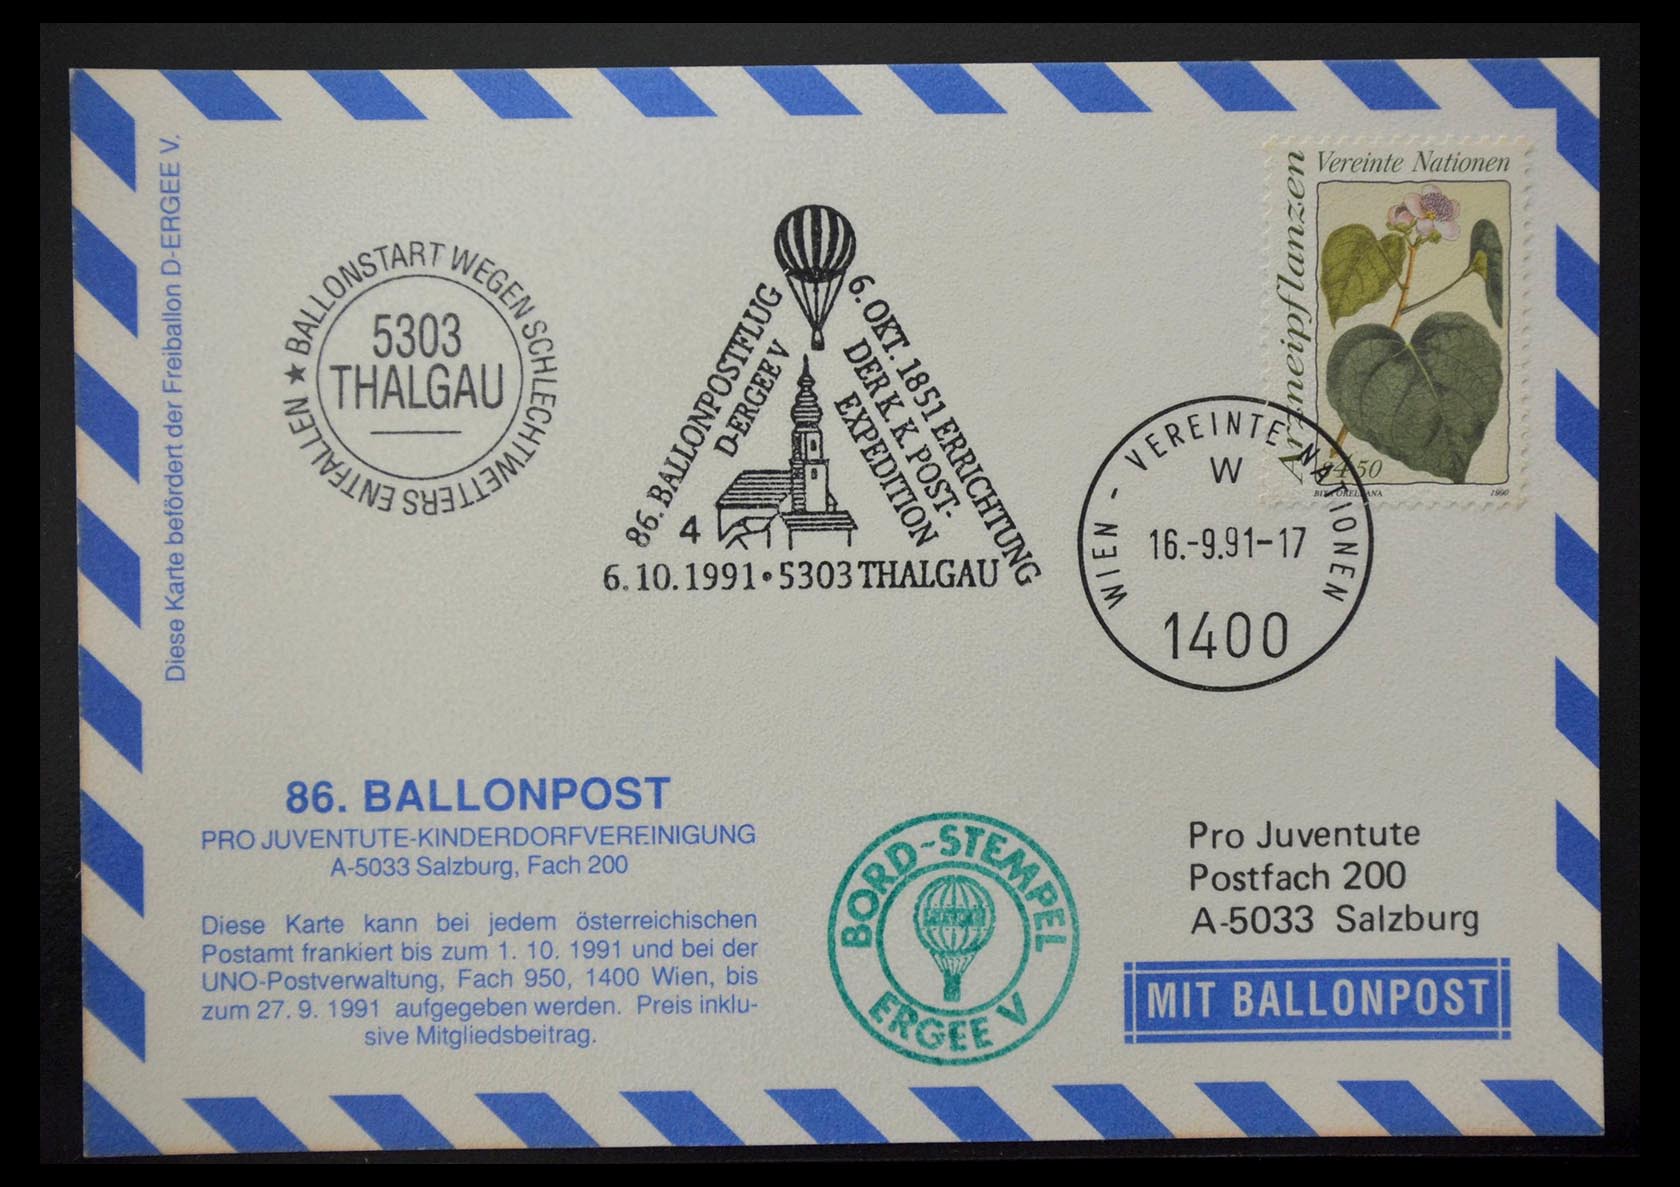 28889 044 - 28889 Balloon post 1927-2001.